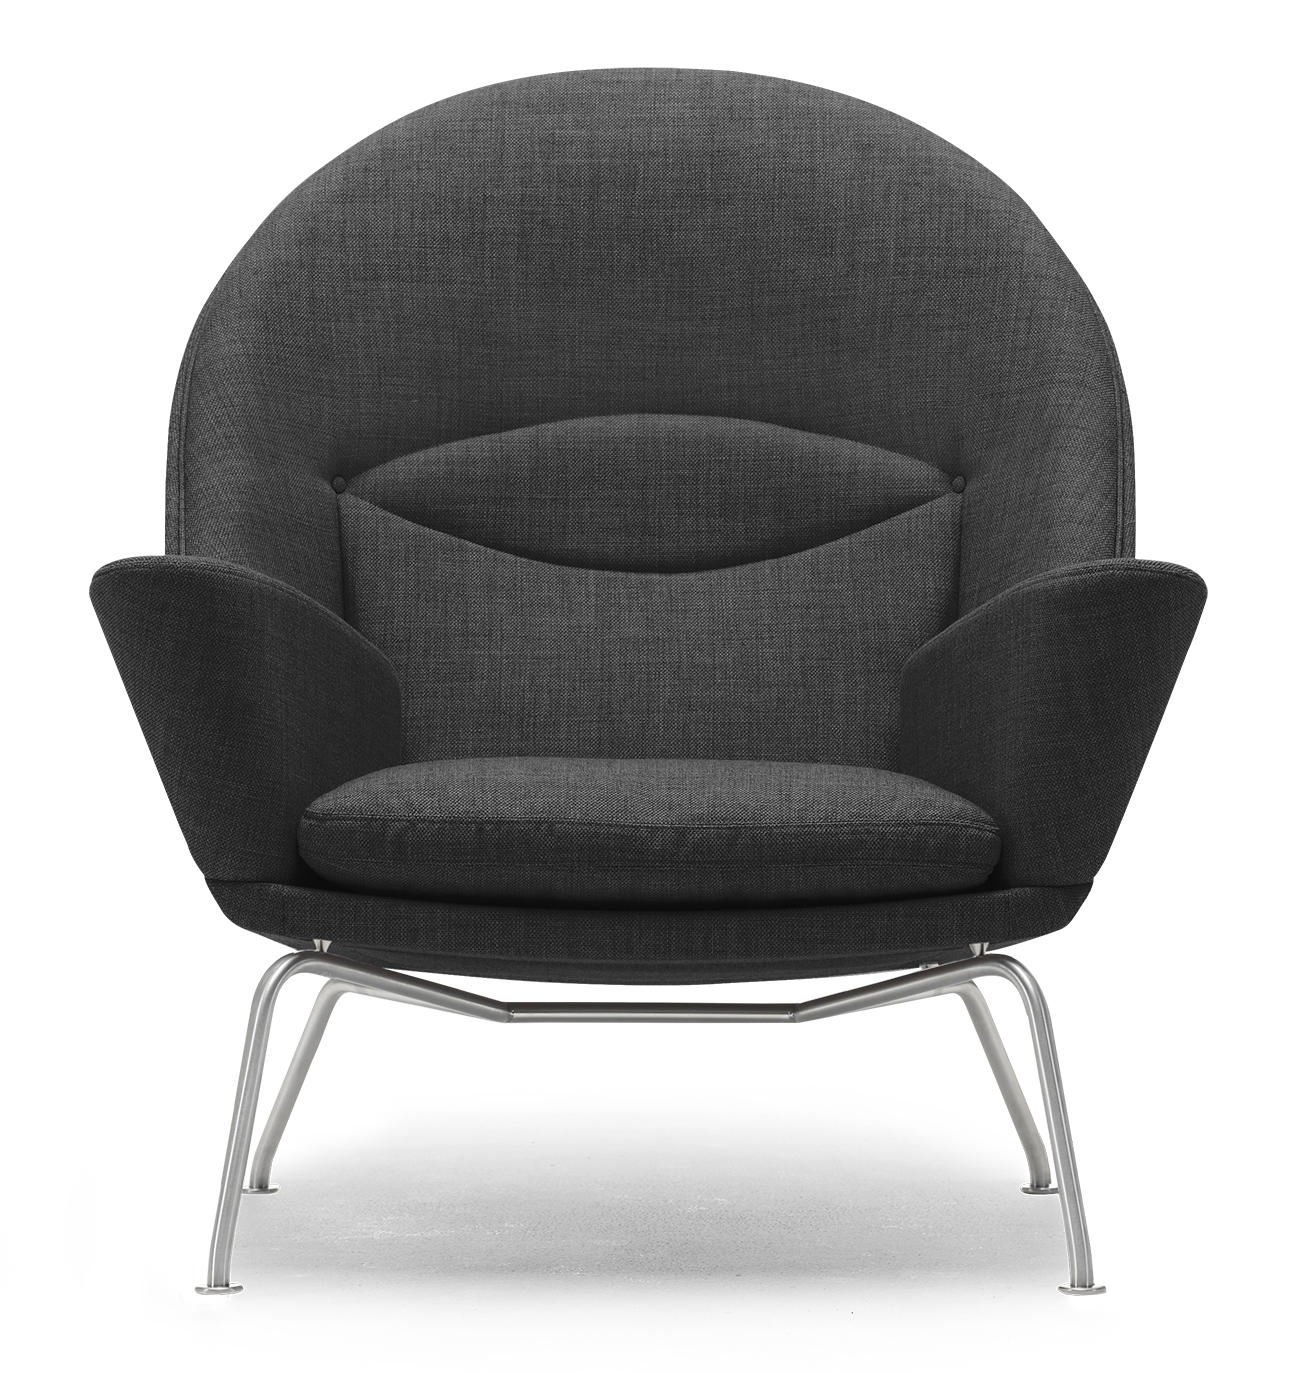 lidenskab veltalende Kæreste Køb CH468 | Oculus Chair designet af Hans J. Wegner | Carl Hansen & Søn